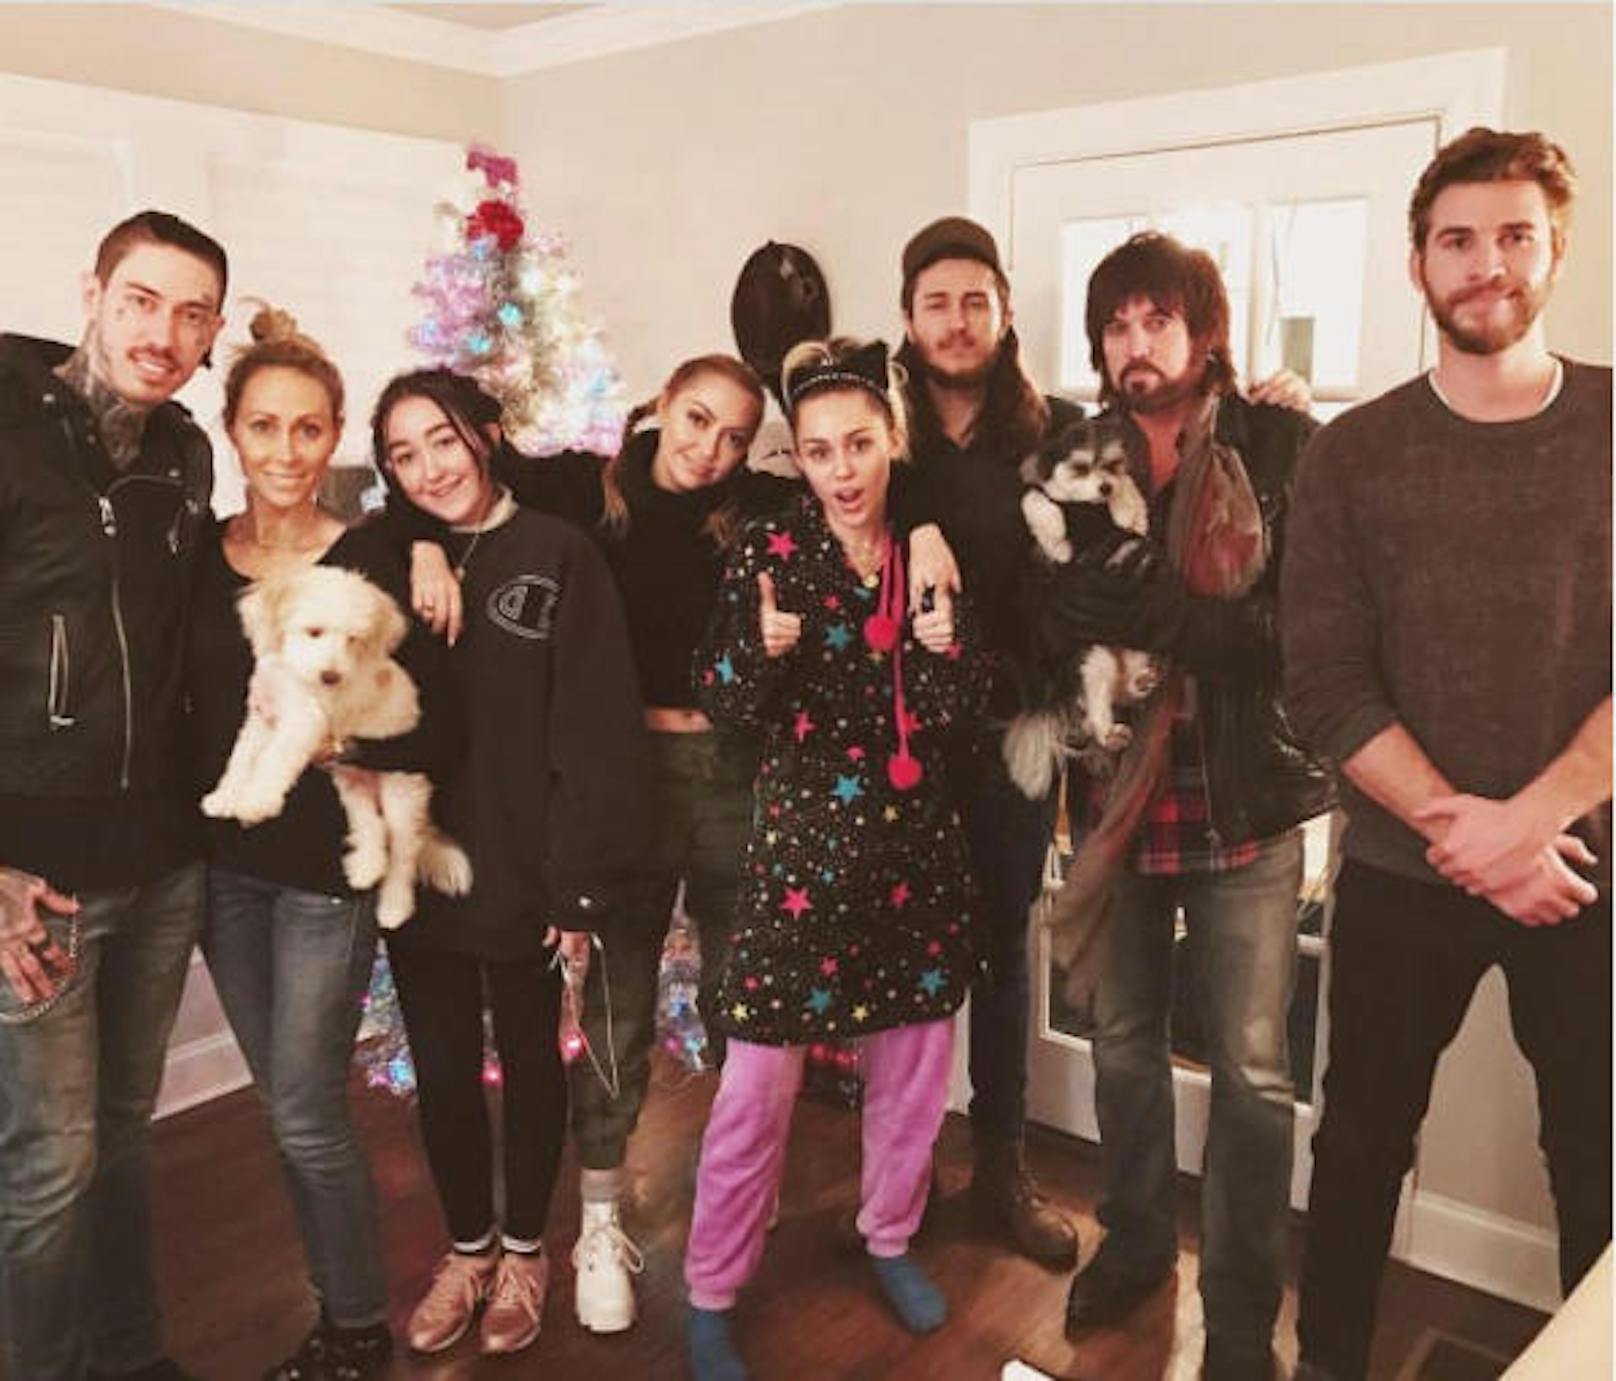 Dabei war Mileys Familie. Liam feierte schon öfter mit dem Cyrus-Clan, so wie hier. Zu sehen sind Mileys Eltern und vier ihrer Geschwister.